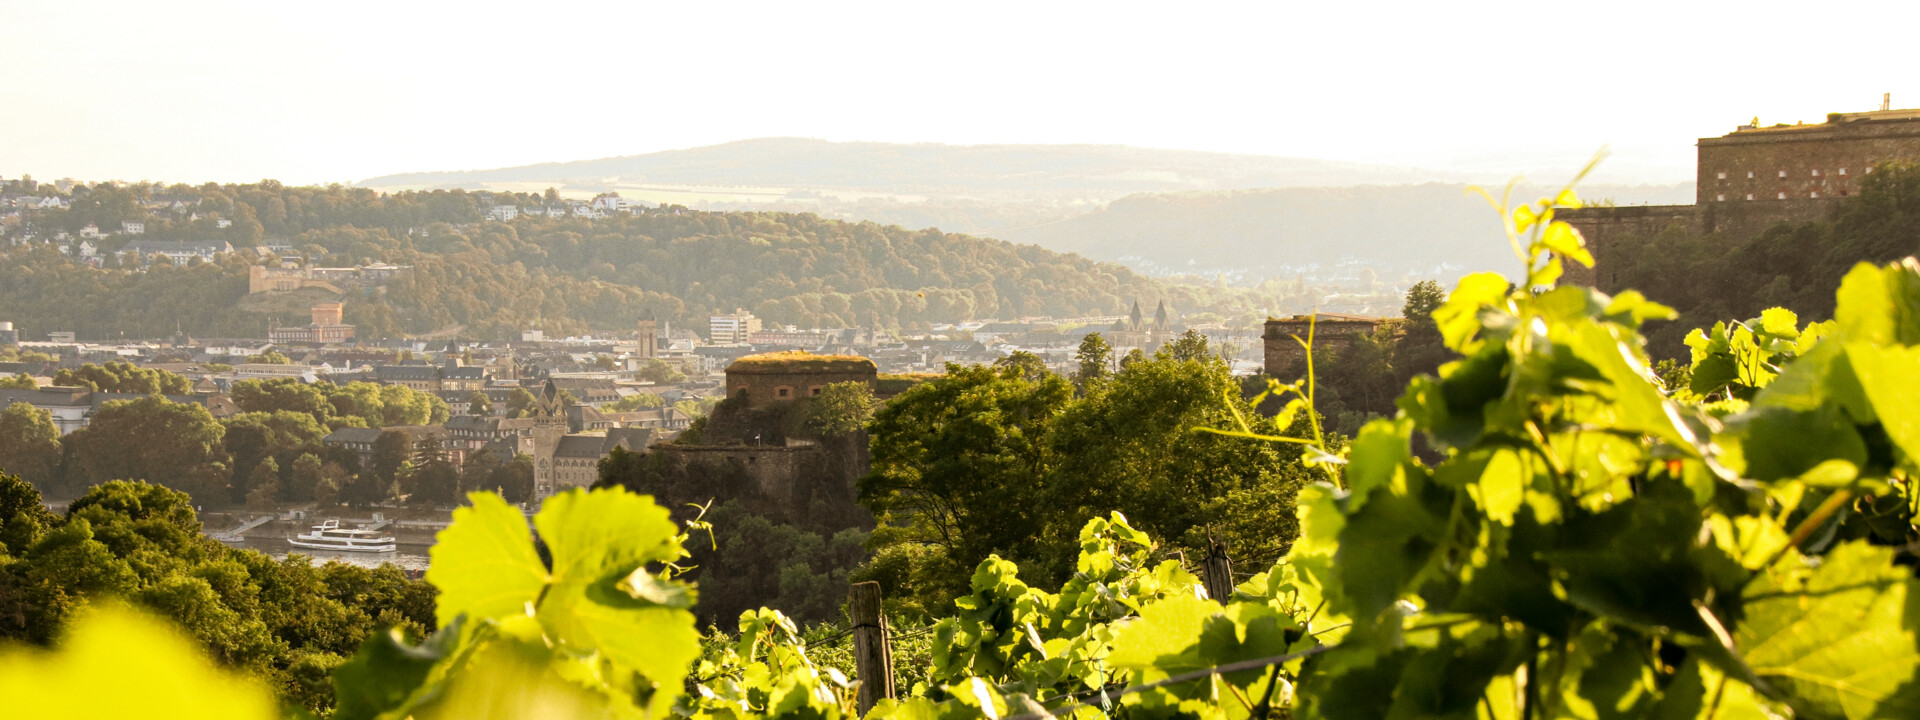 Blick über die Weinberge in Ehrenbreitstein auf die Festung Ehrenbreitstein  ©Koblenz-Touristik GmbH 